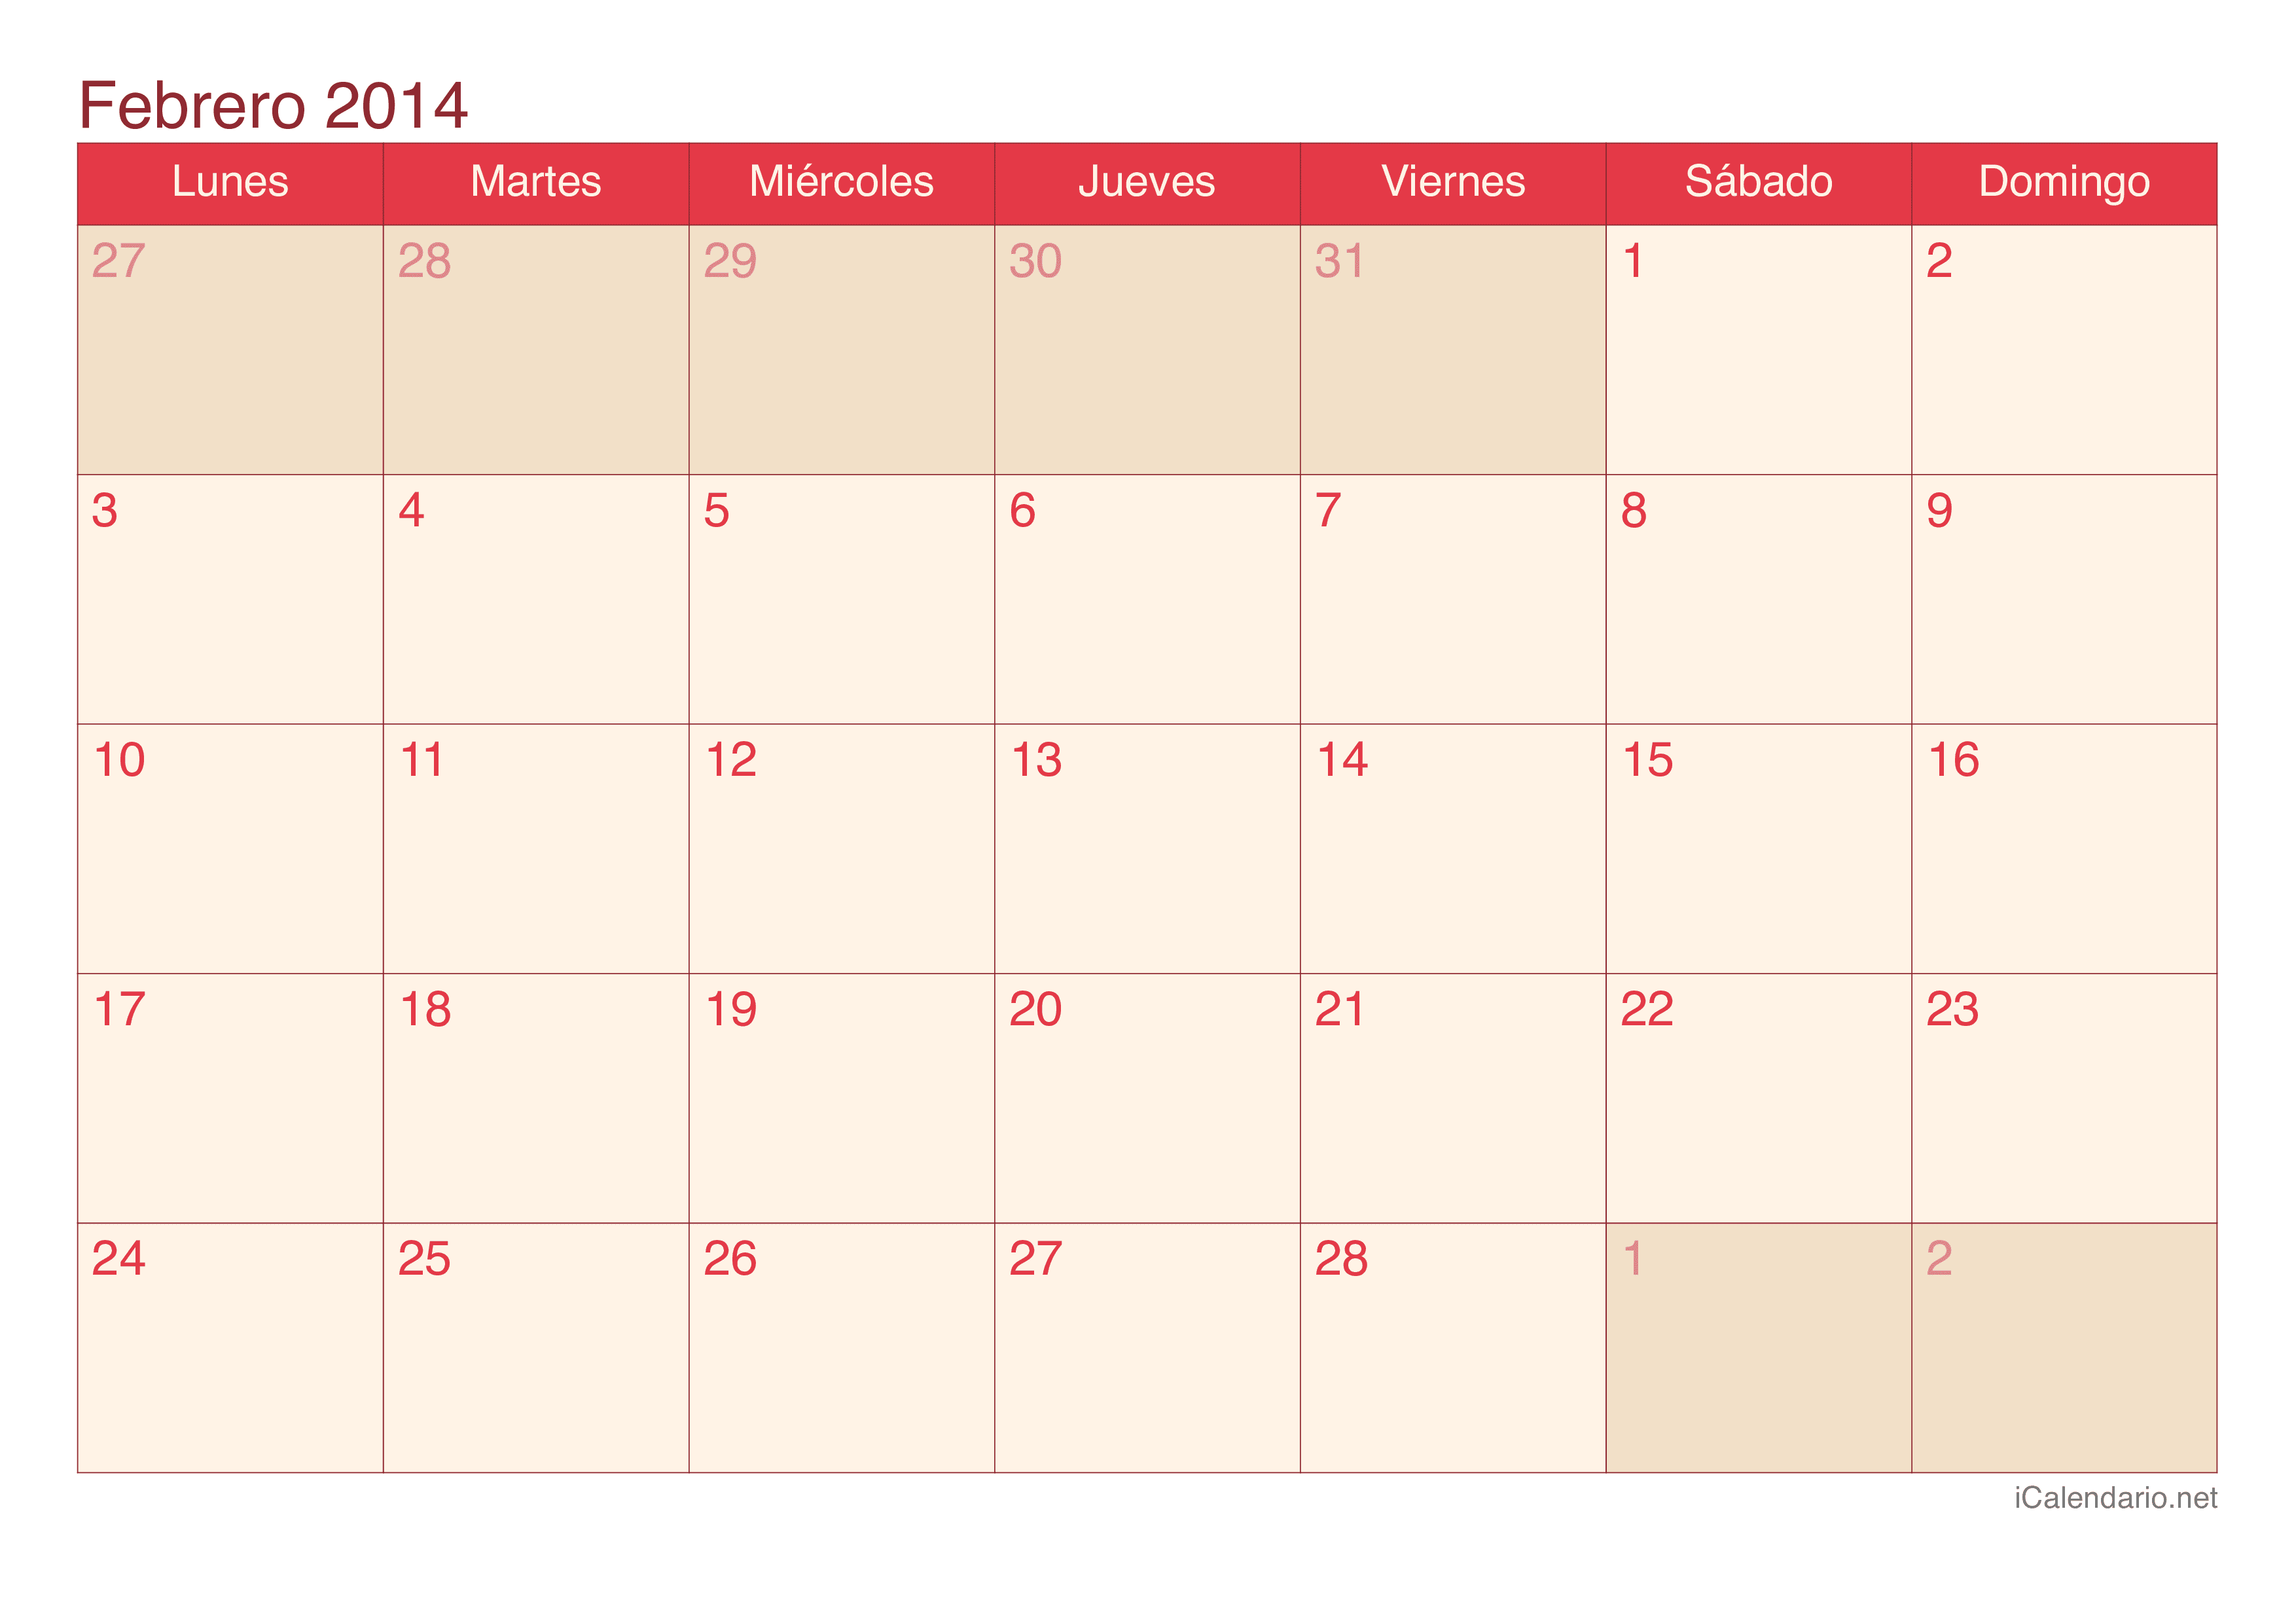 Calendario de febrero 2014 - Cherry